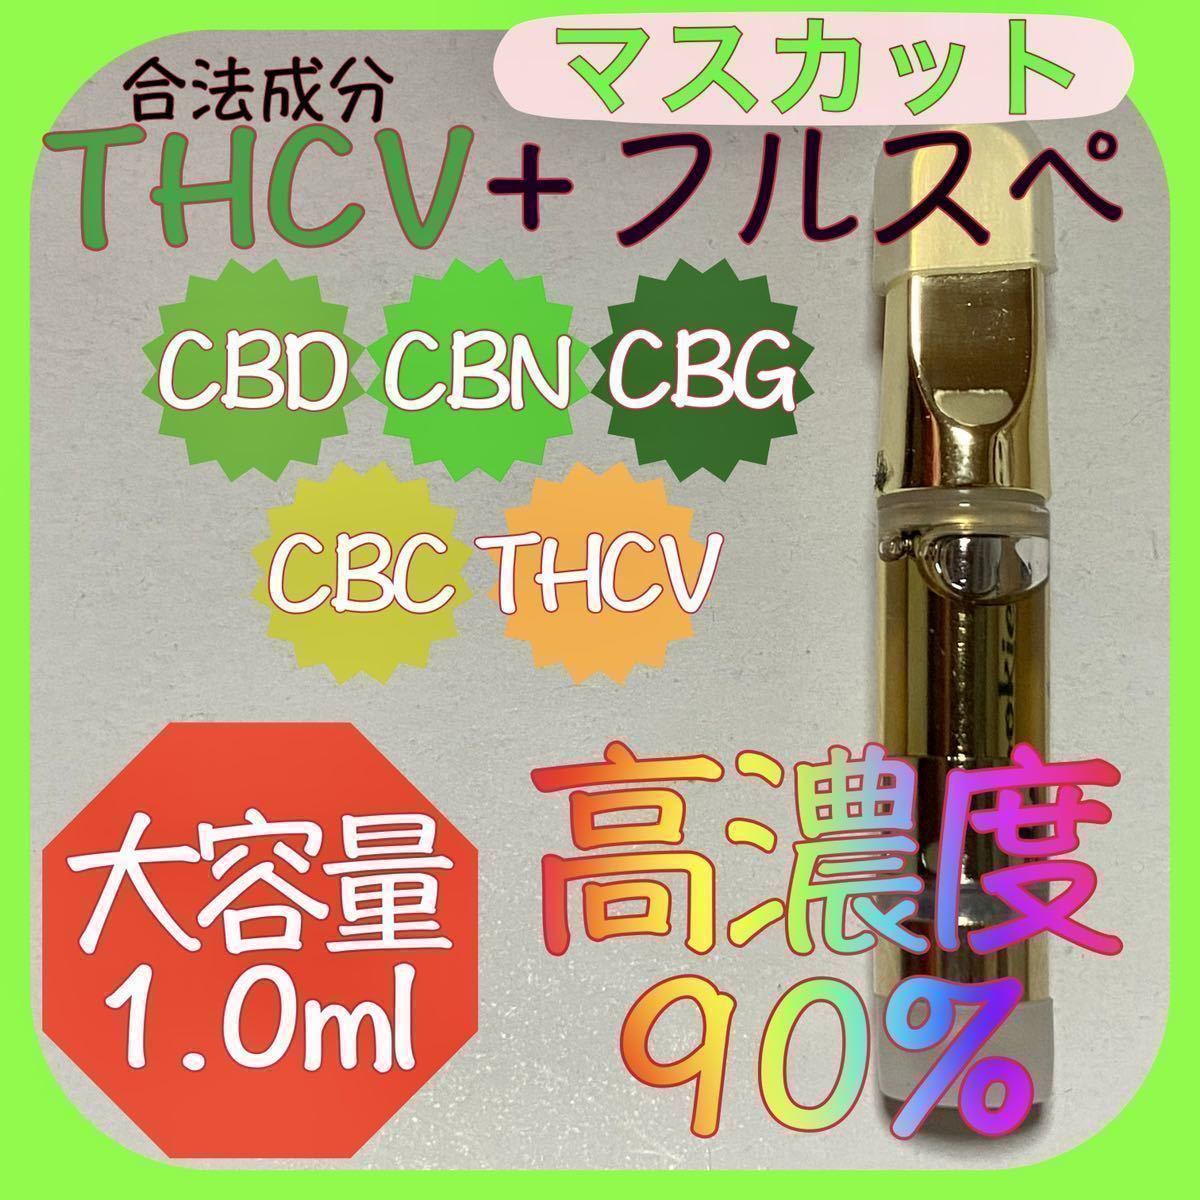 79%OFF!】 オリジナルHリキッド1.0ml CBN CBG CRDP THCV